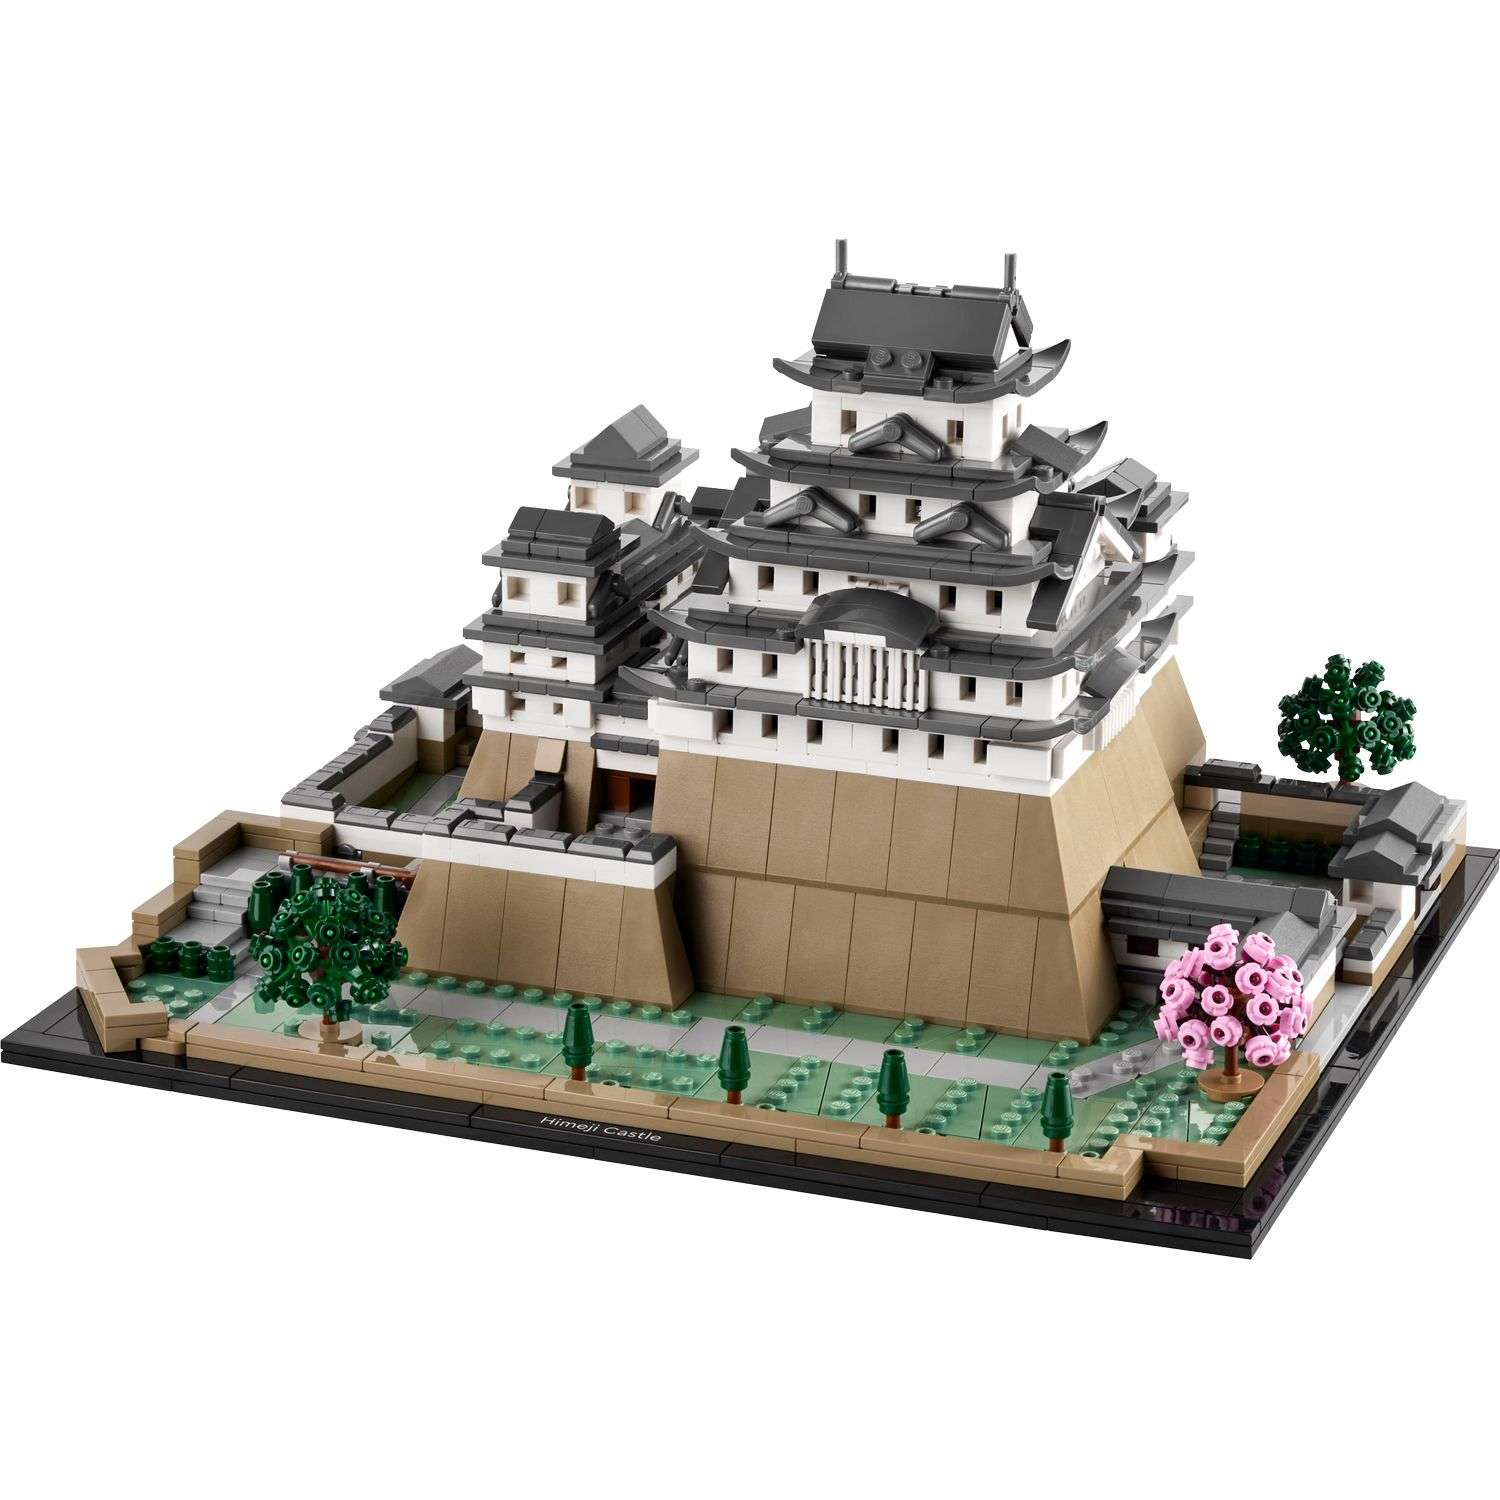 Конструктор LEGO Architecture Himeji Castle 21060 - фото 2